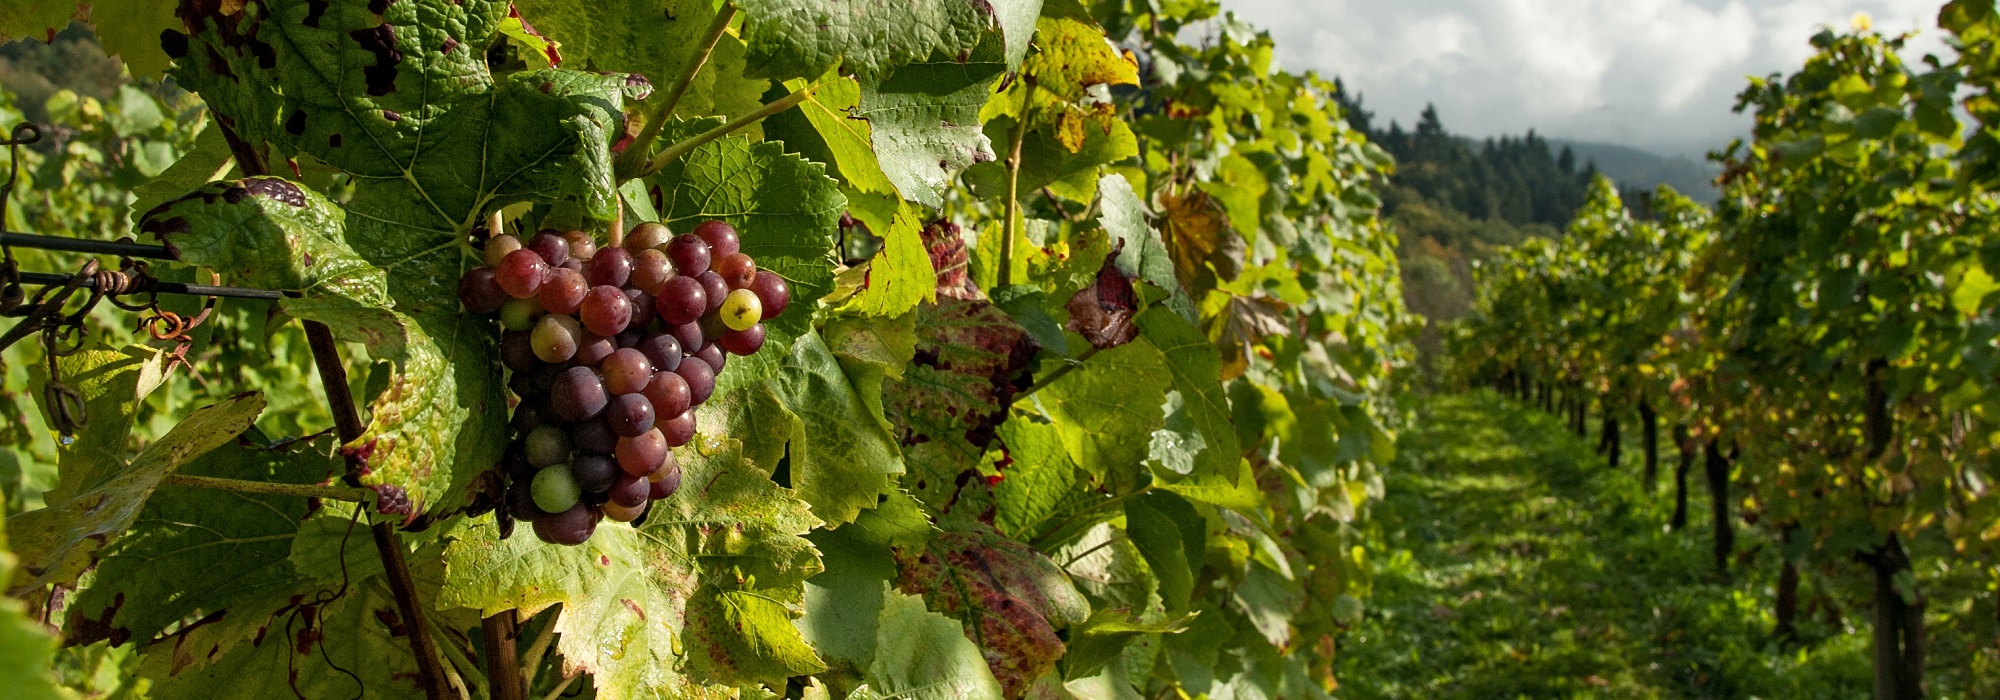 Vue panoramique de raisins dans les vignes rurales